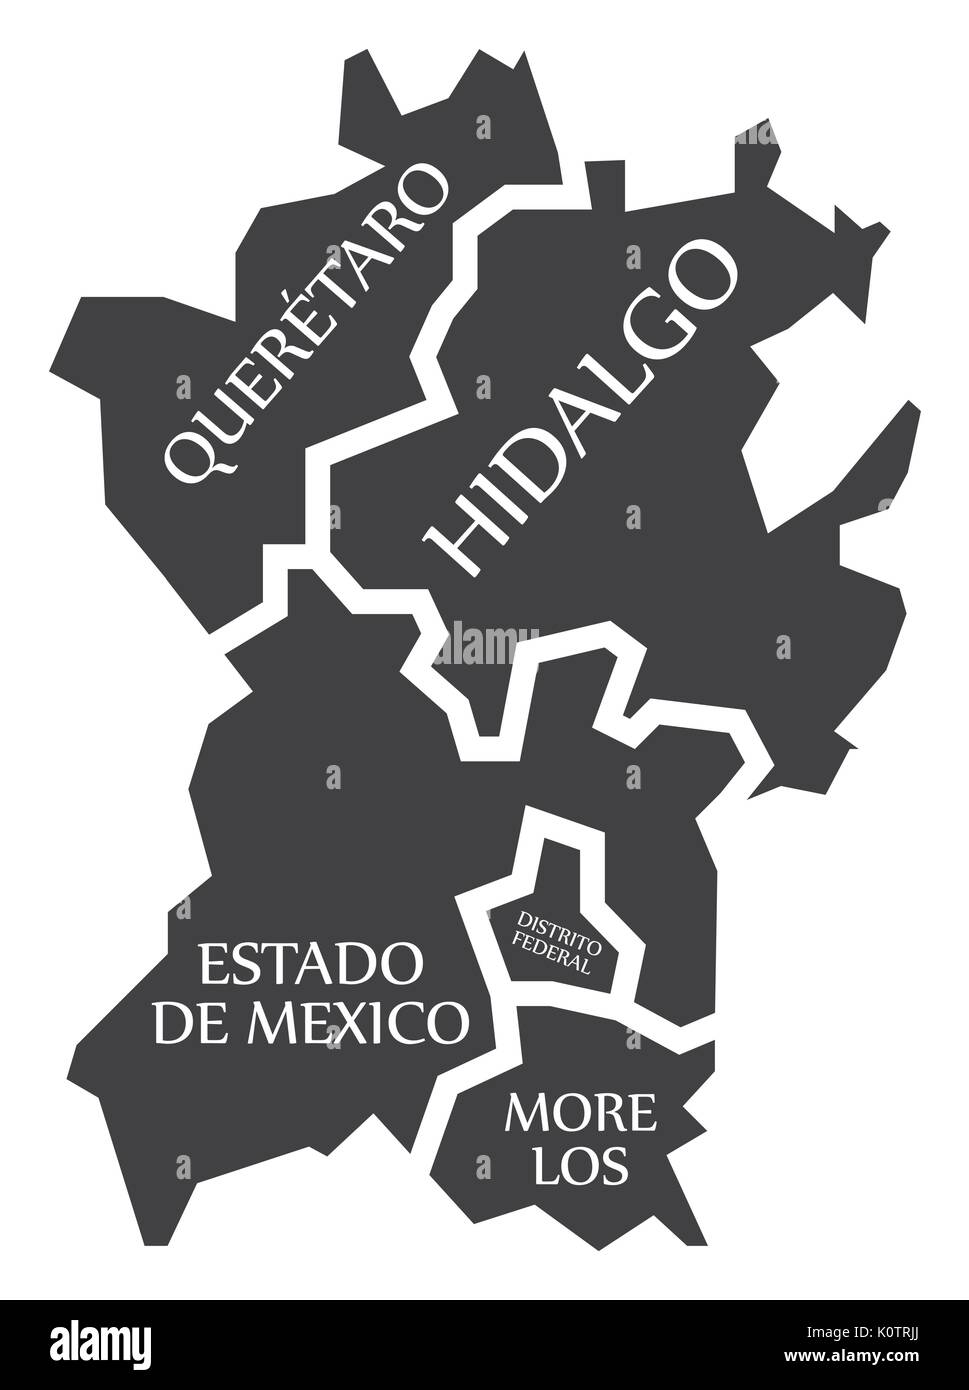 Queretaro - Hidalgo - Estado de Mexico - Distrito Federal - Morelos Mexique Carte illustration Illustration de Vecteur